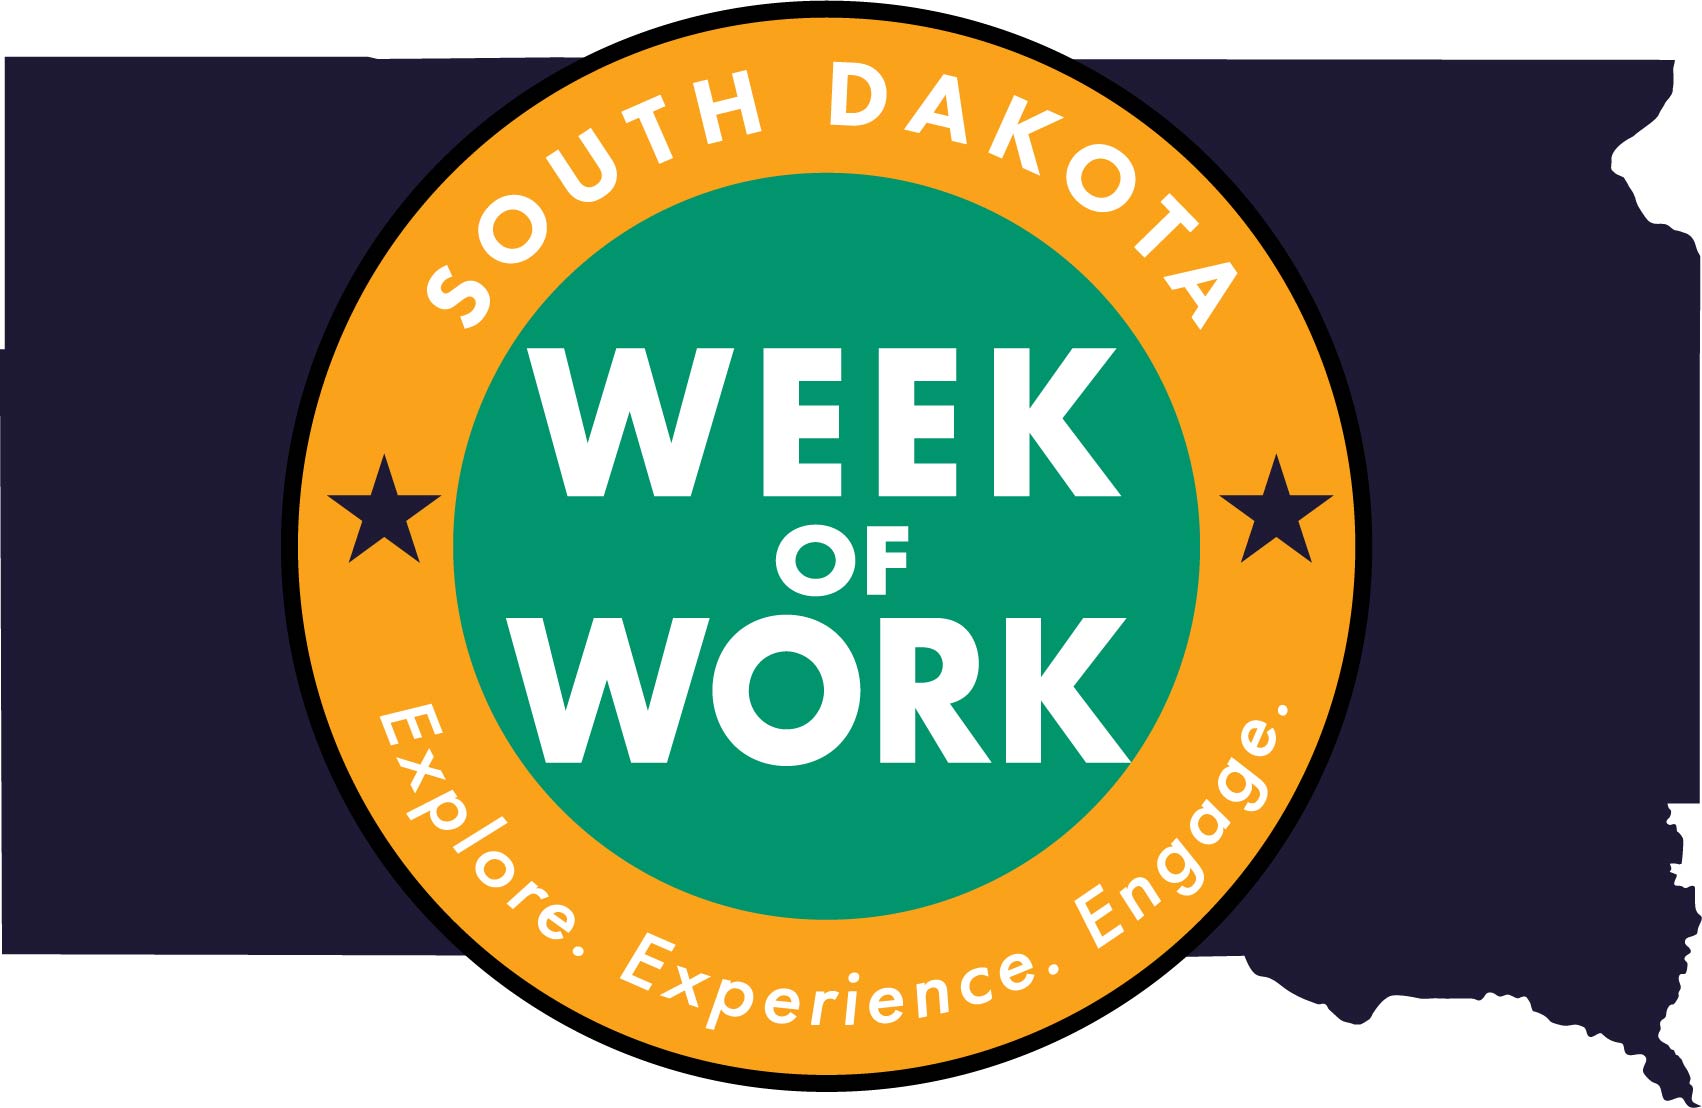 South Dakota Week of Work logo